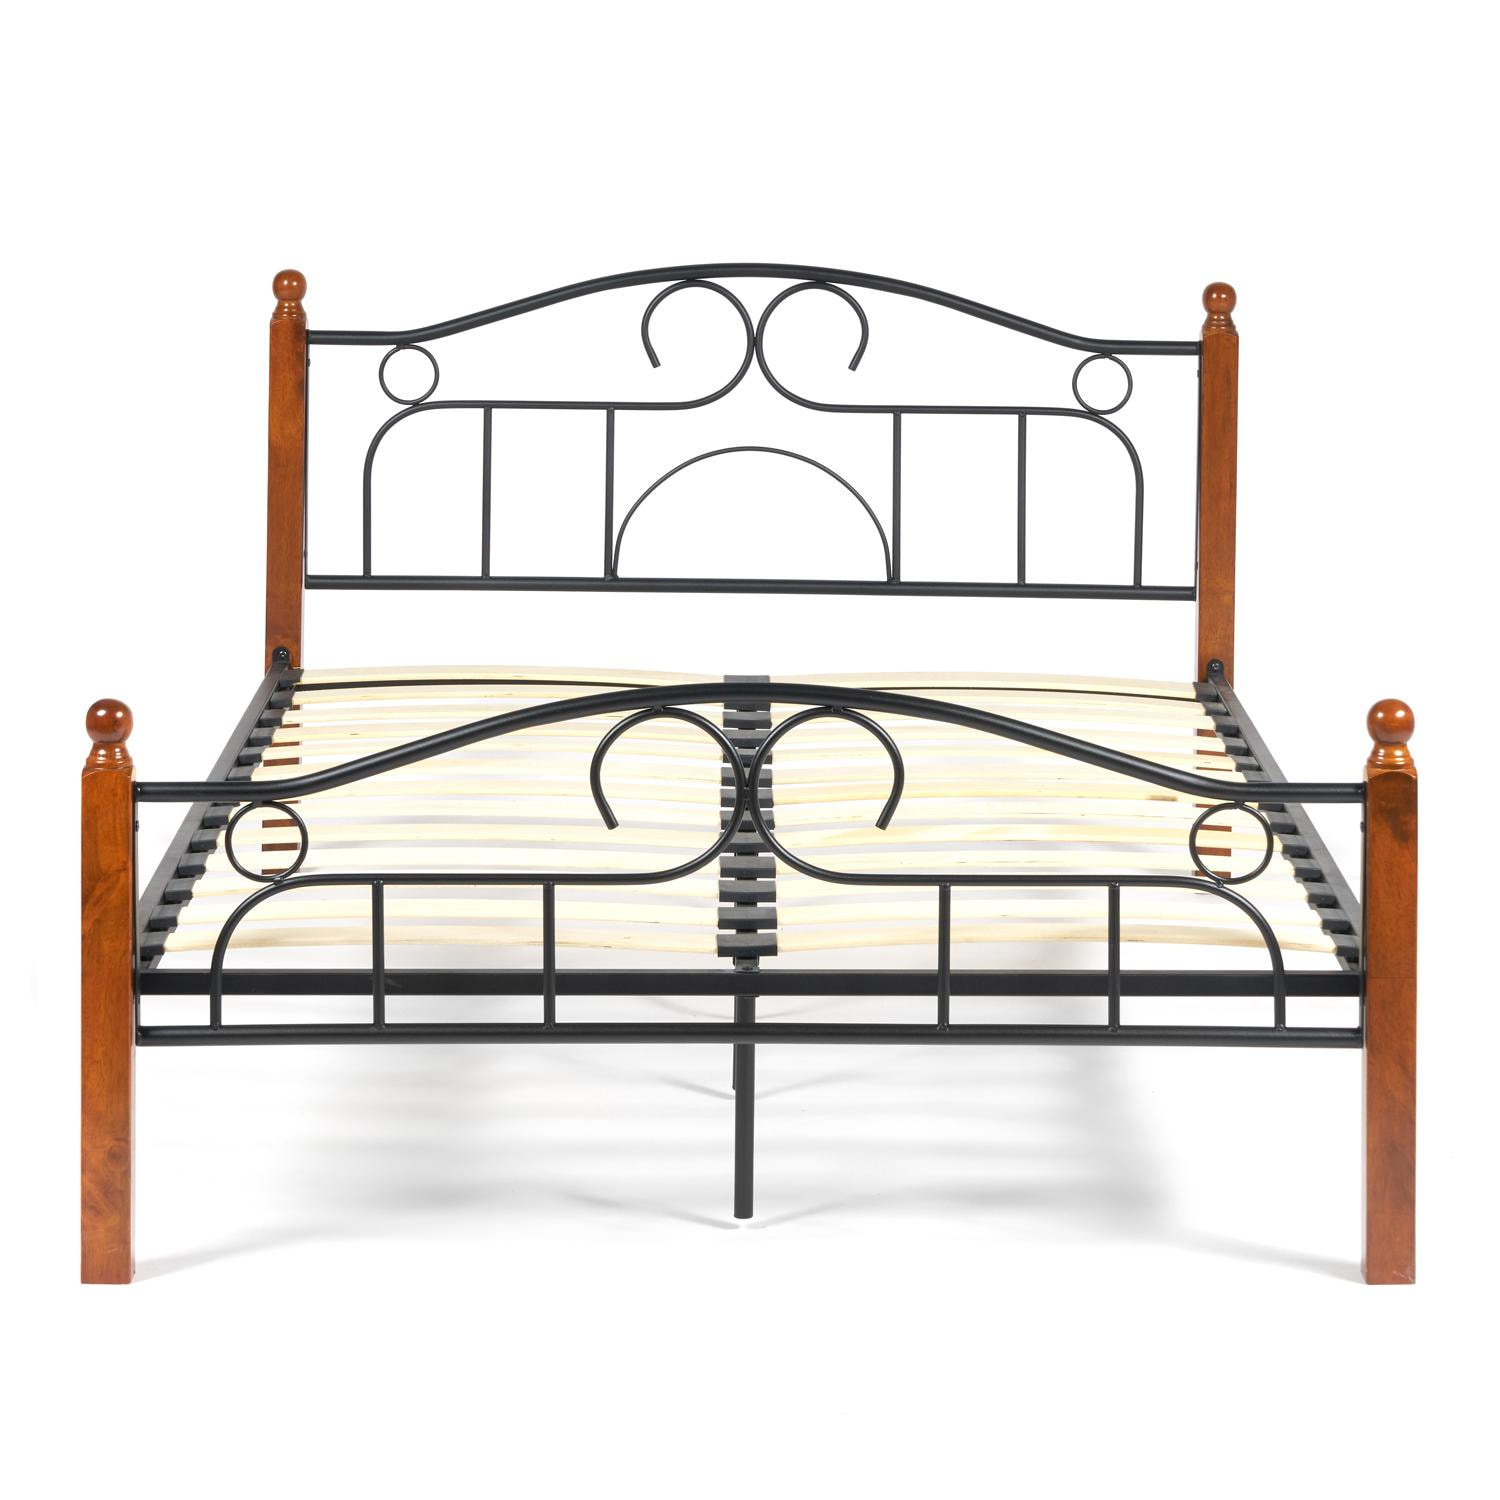 Кровать AT-808 Wood slat base дерево гевея/металл, 120*200 см (middle bed), красный дуб/черный